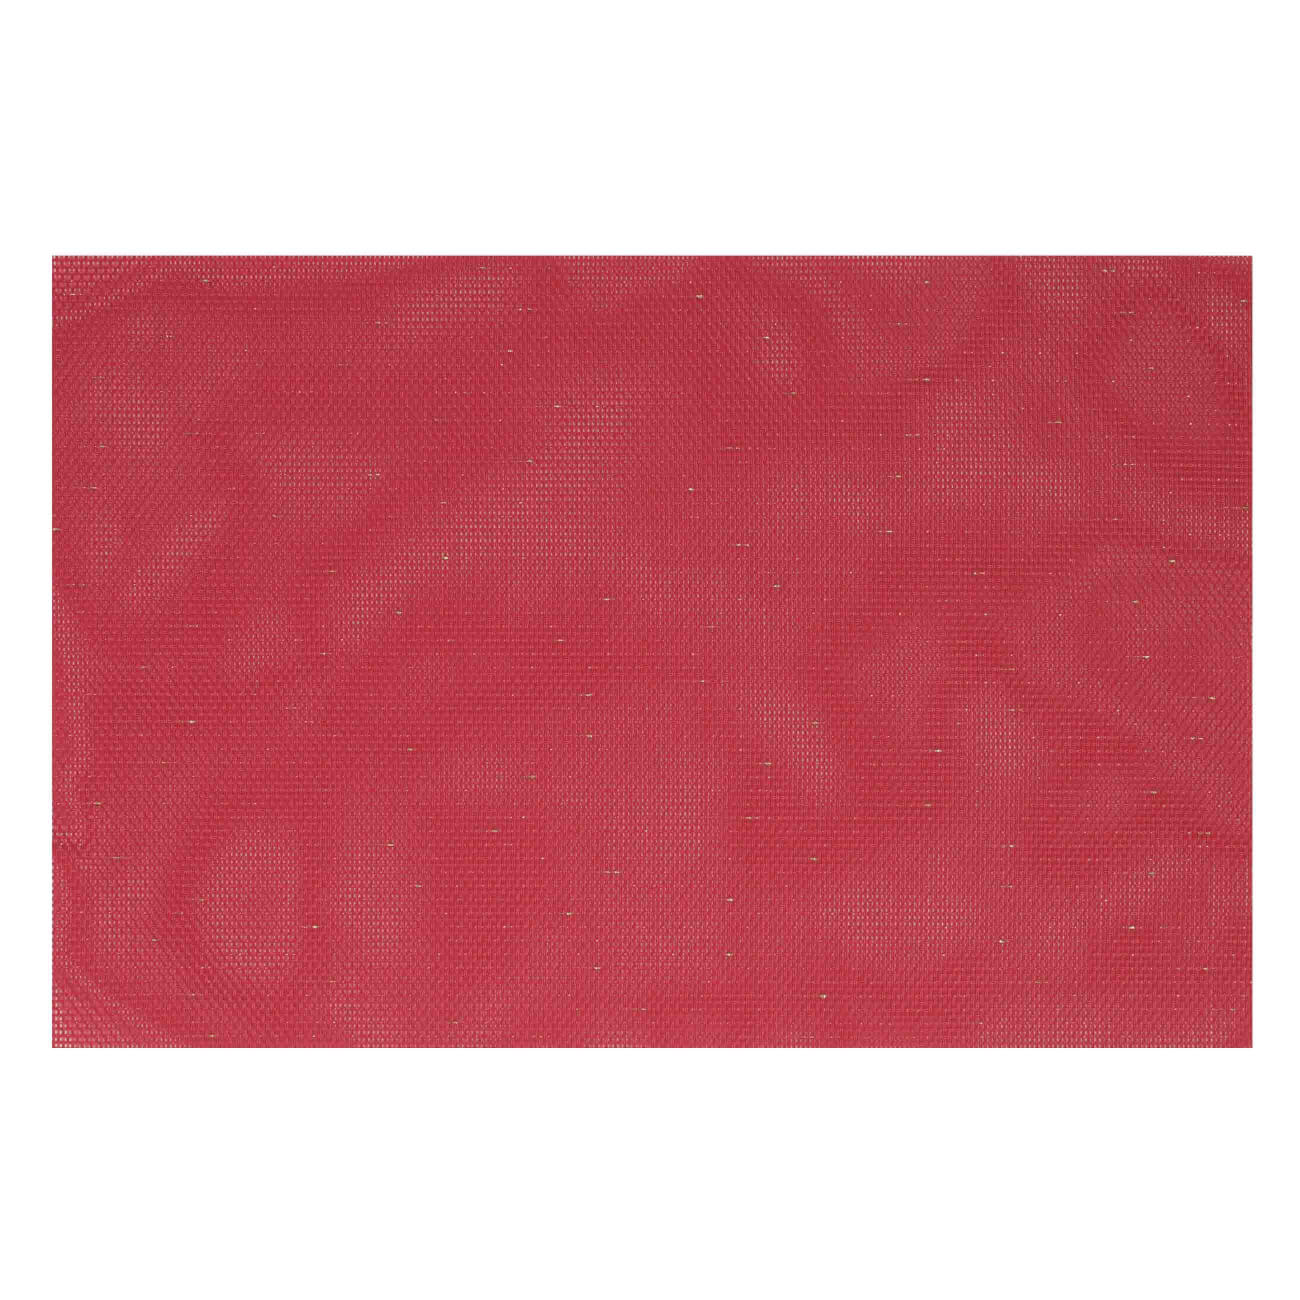 Салфетка под приборы, 30х45 см, ПВХ/полиэстер, прямоугольная, красная, Solid салфетка под приборы 30х45 см полиэстер прямоугольная белая листья и ягоды winter berry